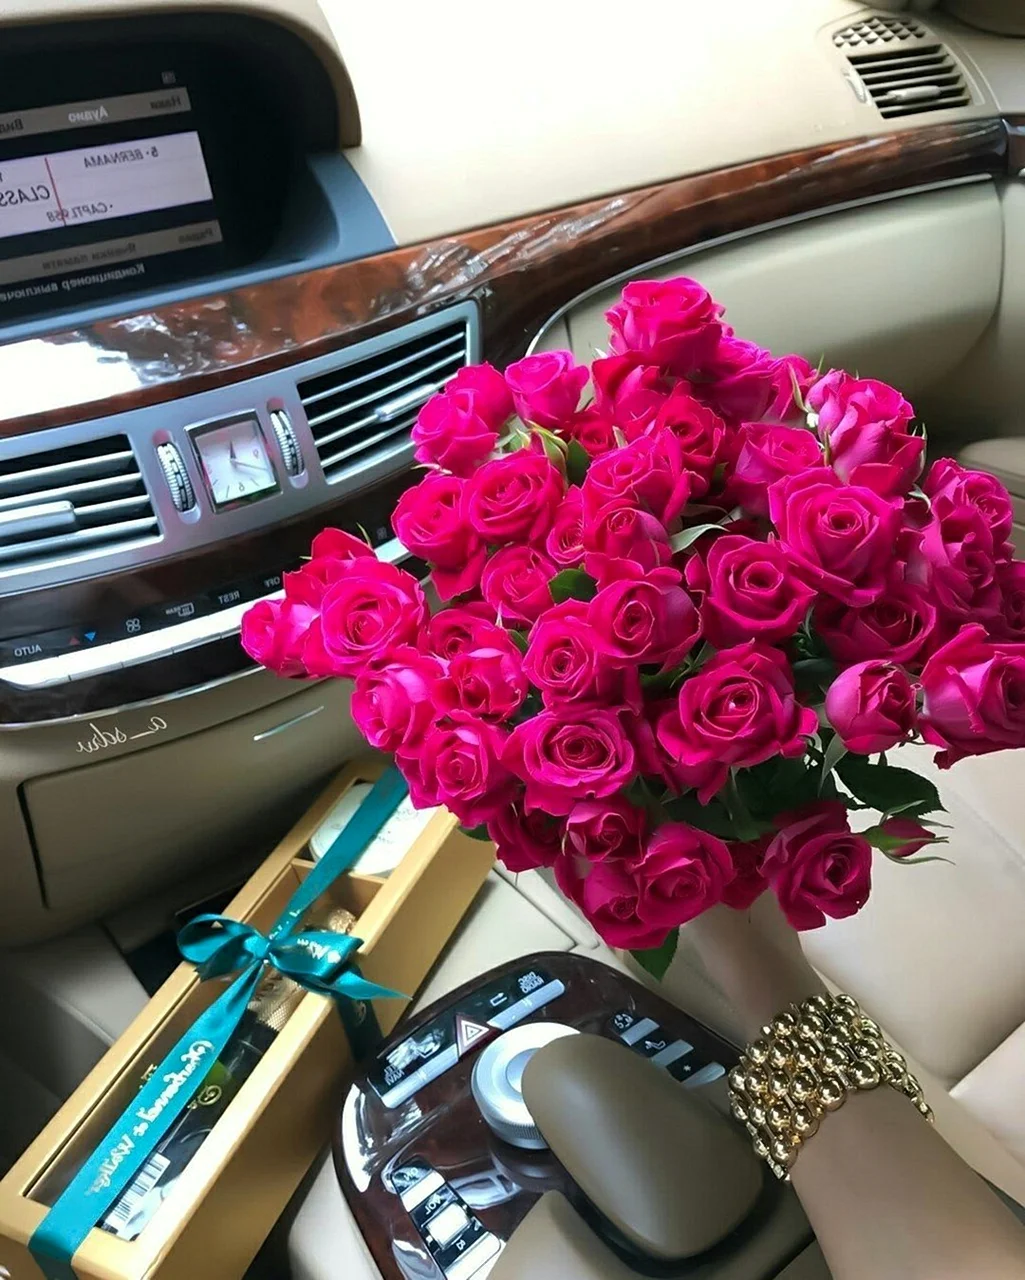 Букет цветов в салоне машины